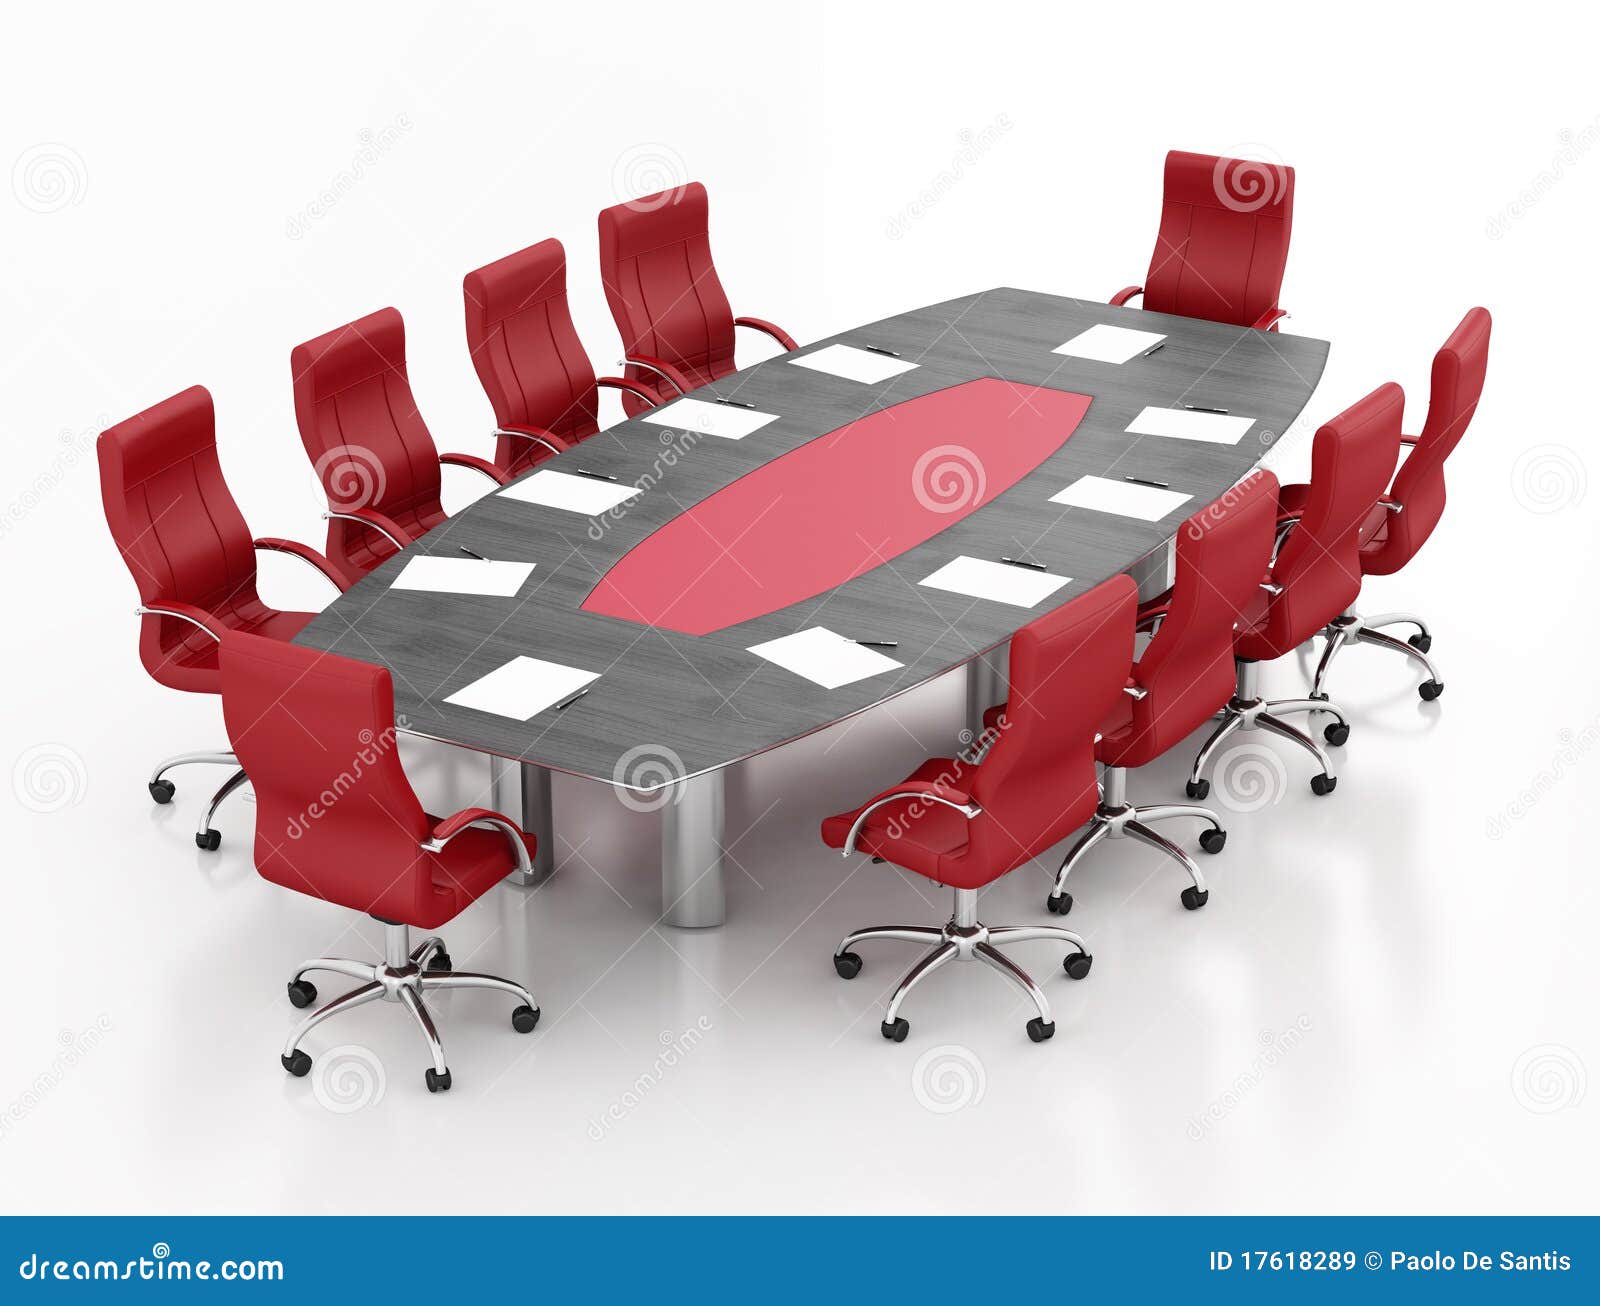 Meeting Table Stock Photography | CartoonDealer.com #10737638